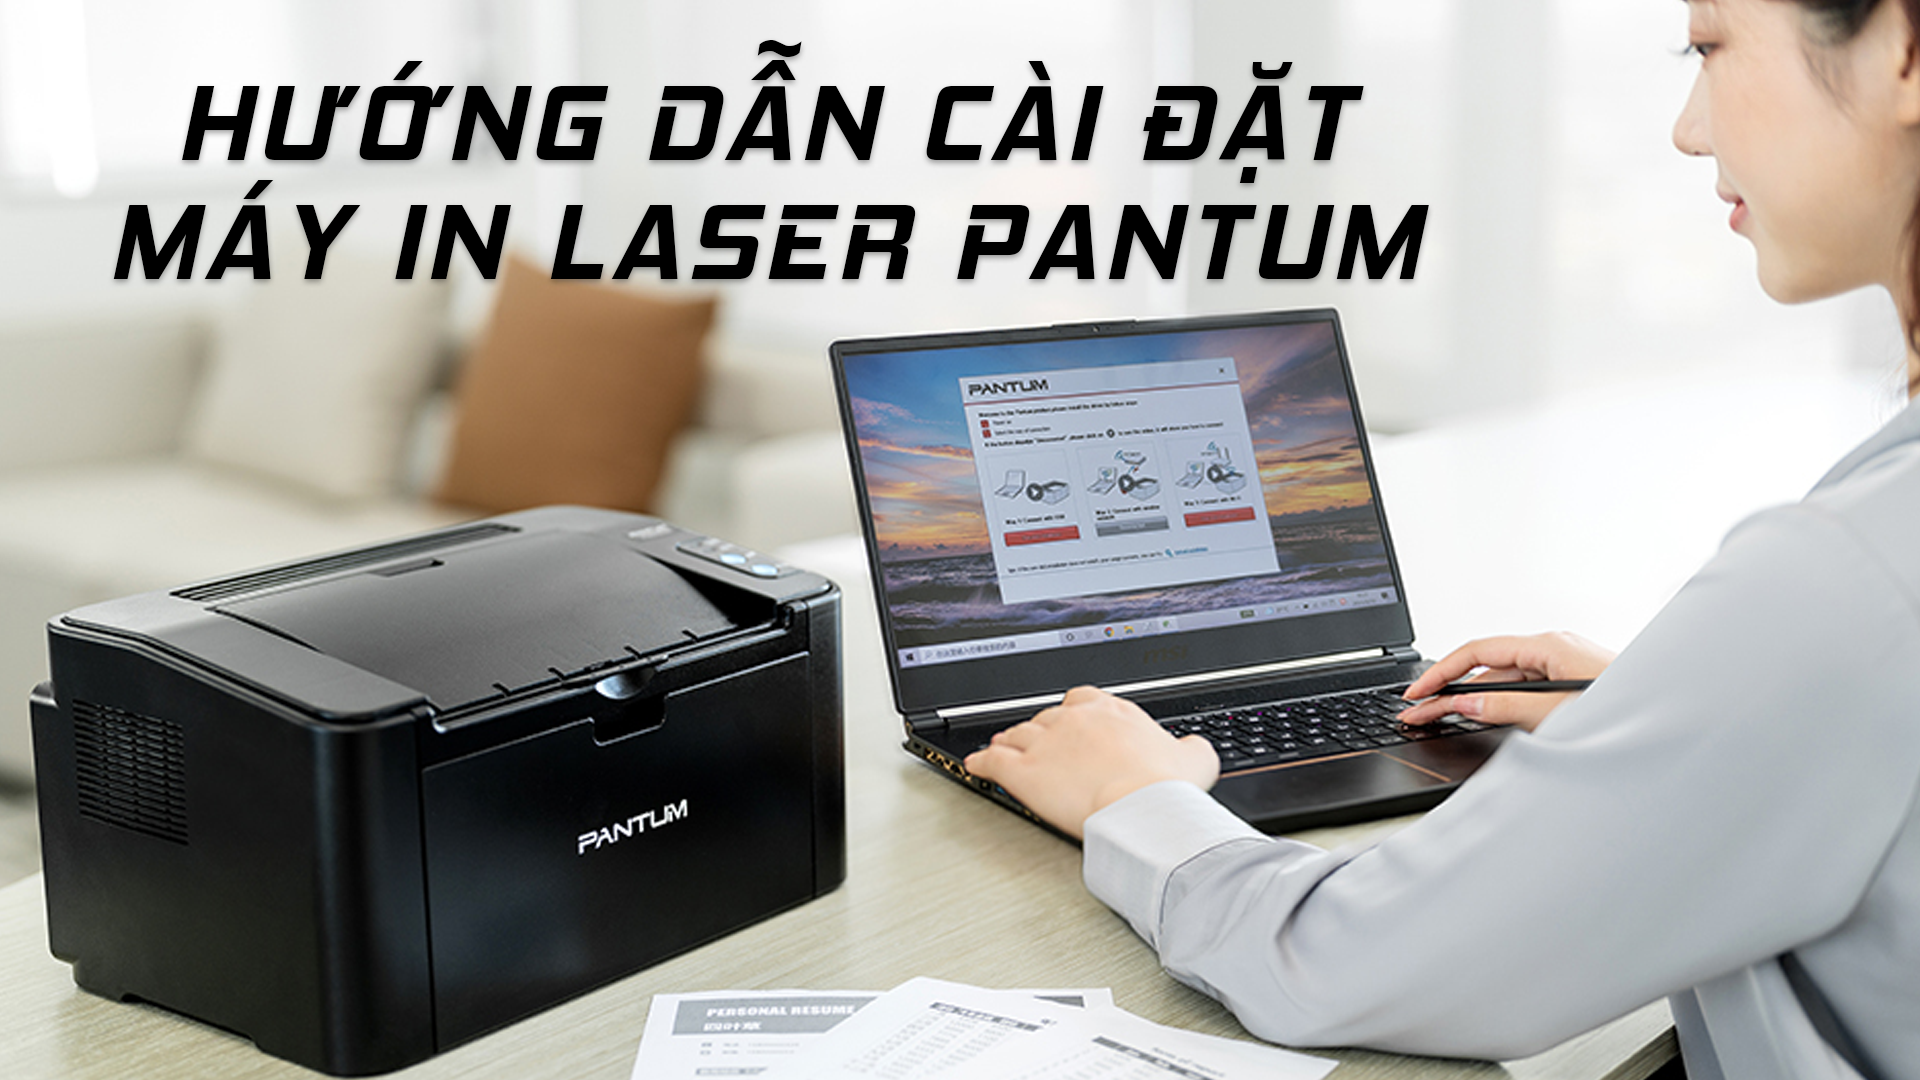 Hướng dẫn cài đặt máy in laser PANTUM dễ dàng